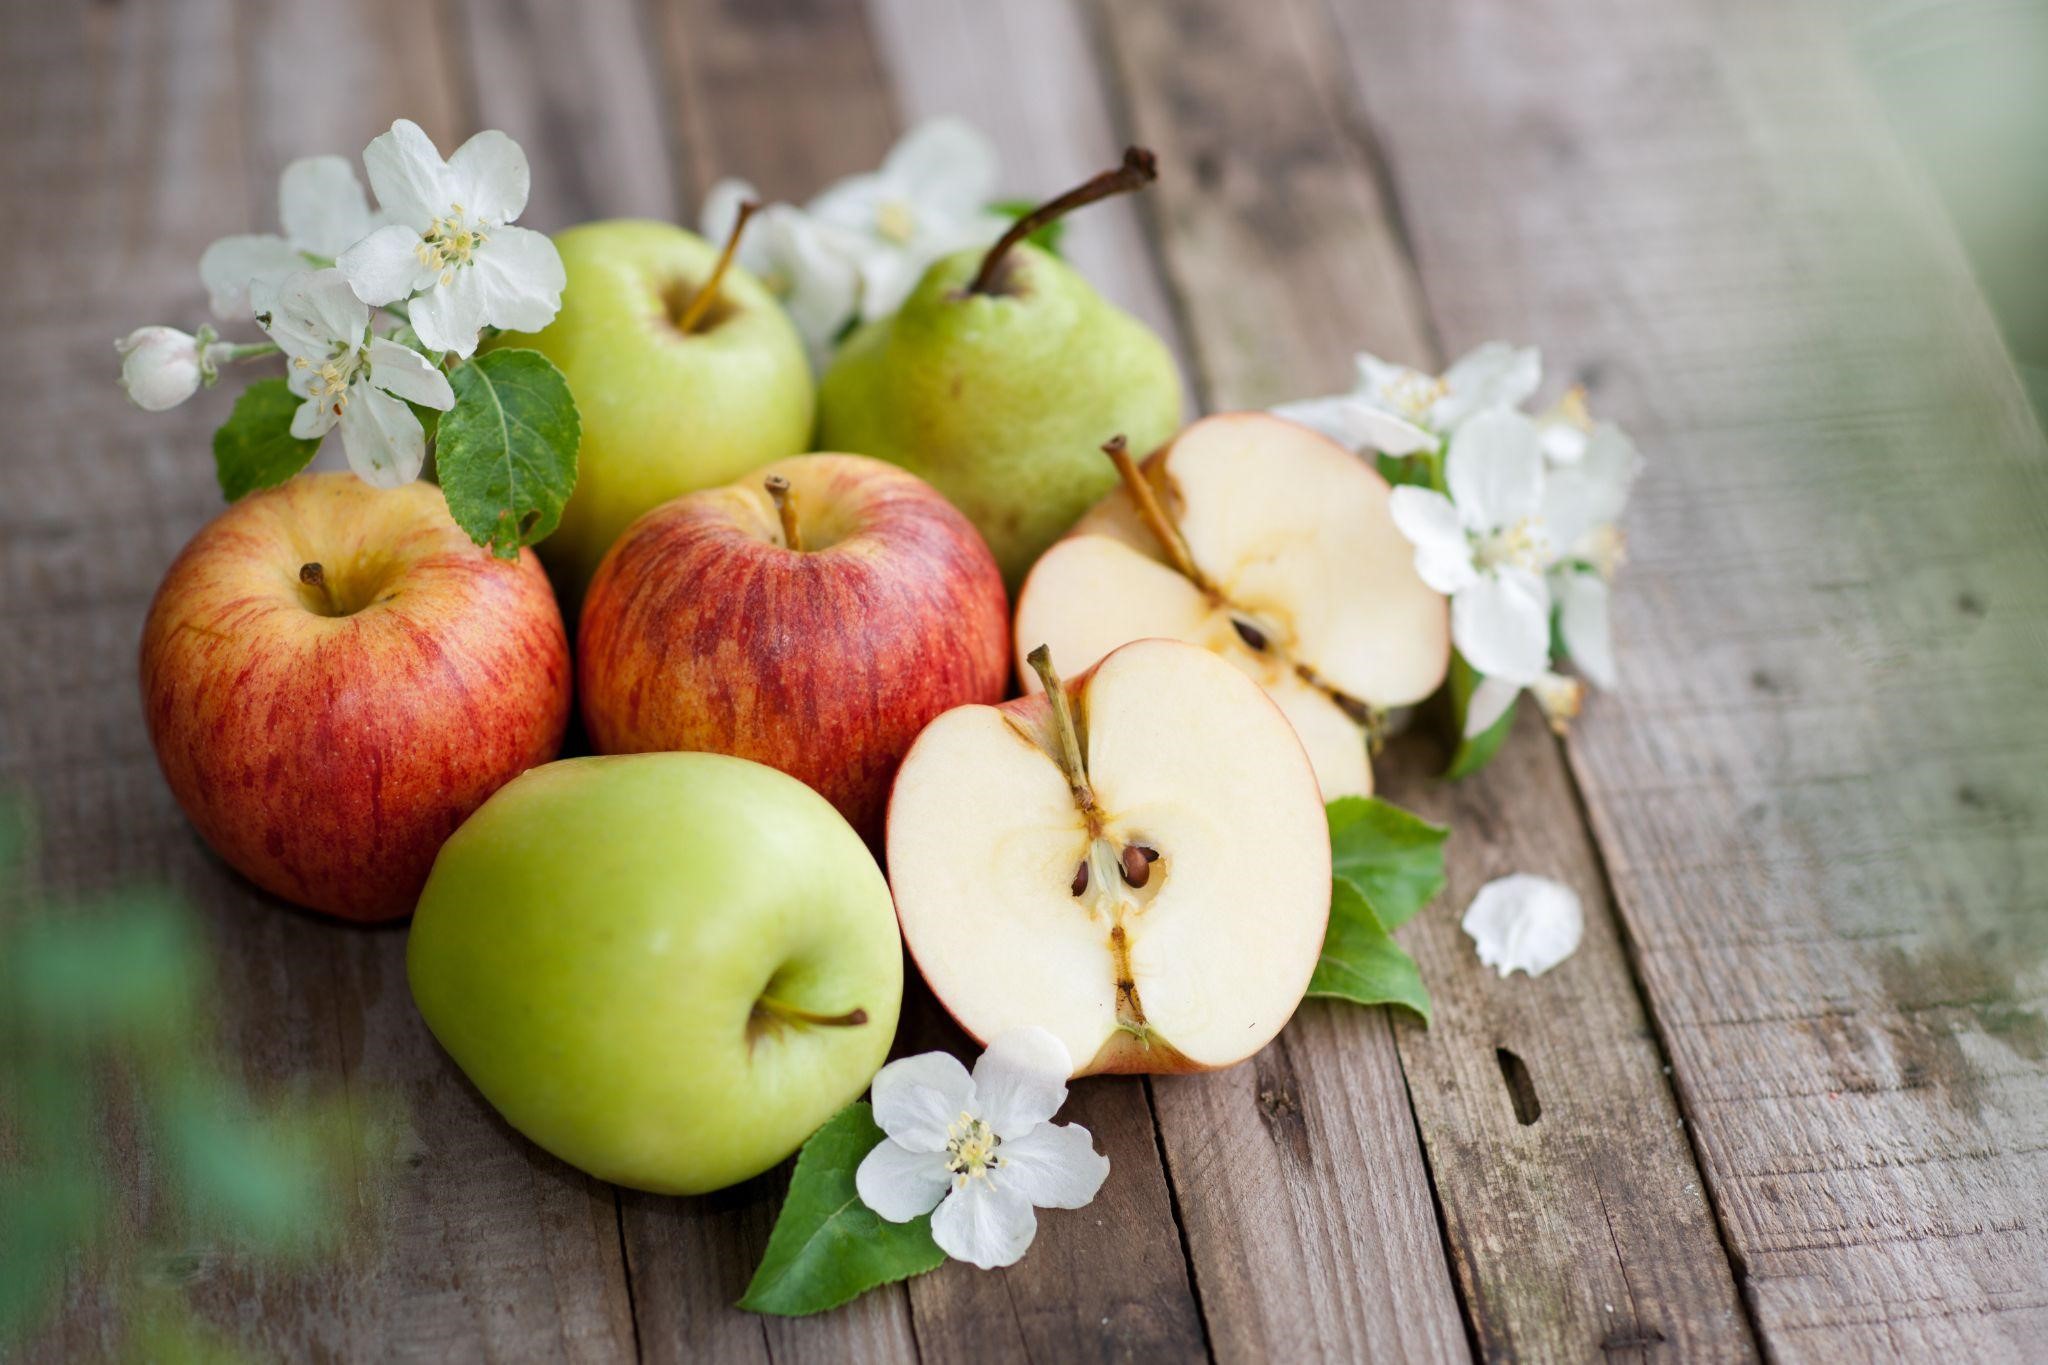 「梨」と「りんご」の違いを比較。それぞれの栄養価や期待できる効能を解説